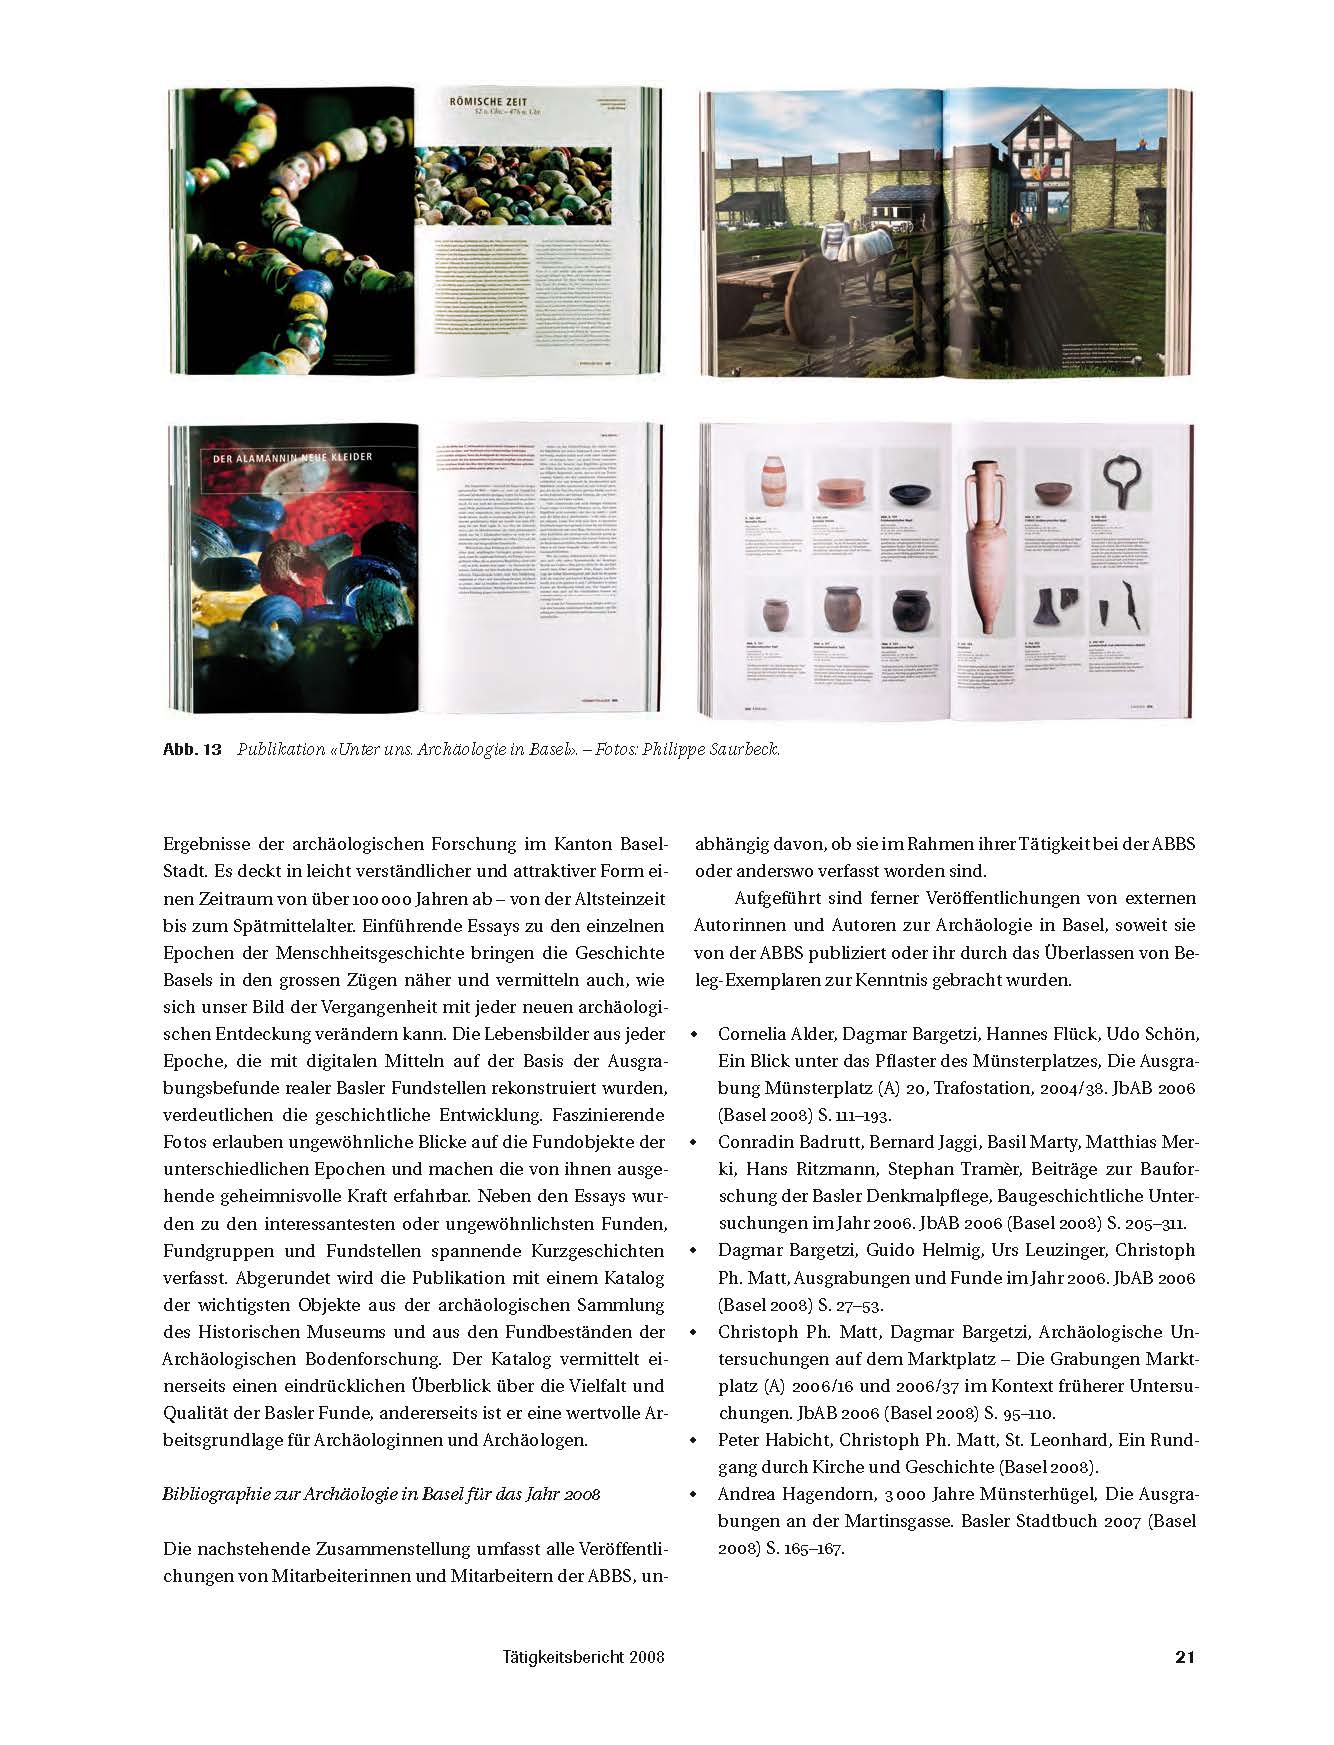 Seiten aus der Publikation "Unter Uns. Archäologie in Basel", die im Berichtsjahr erschienen ist